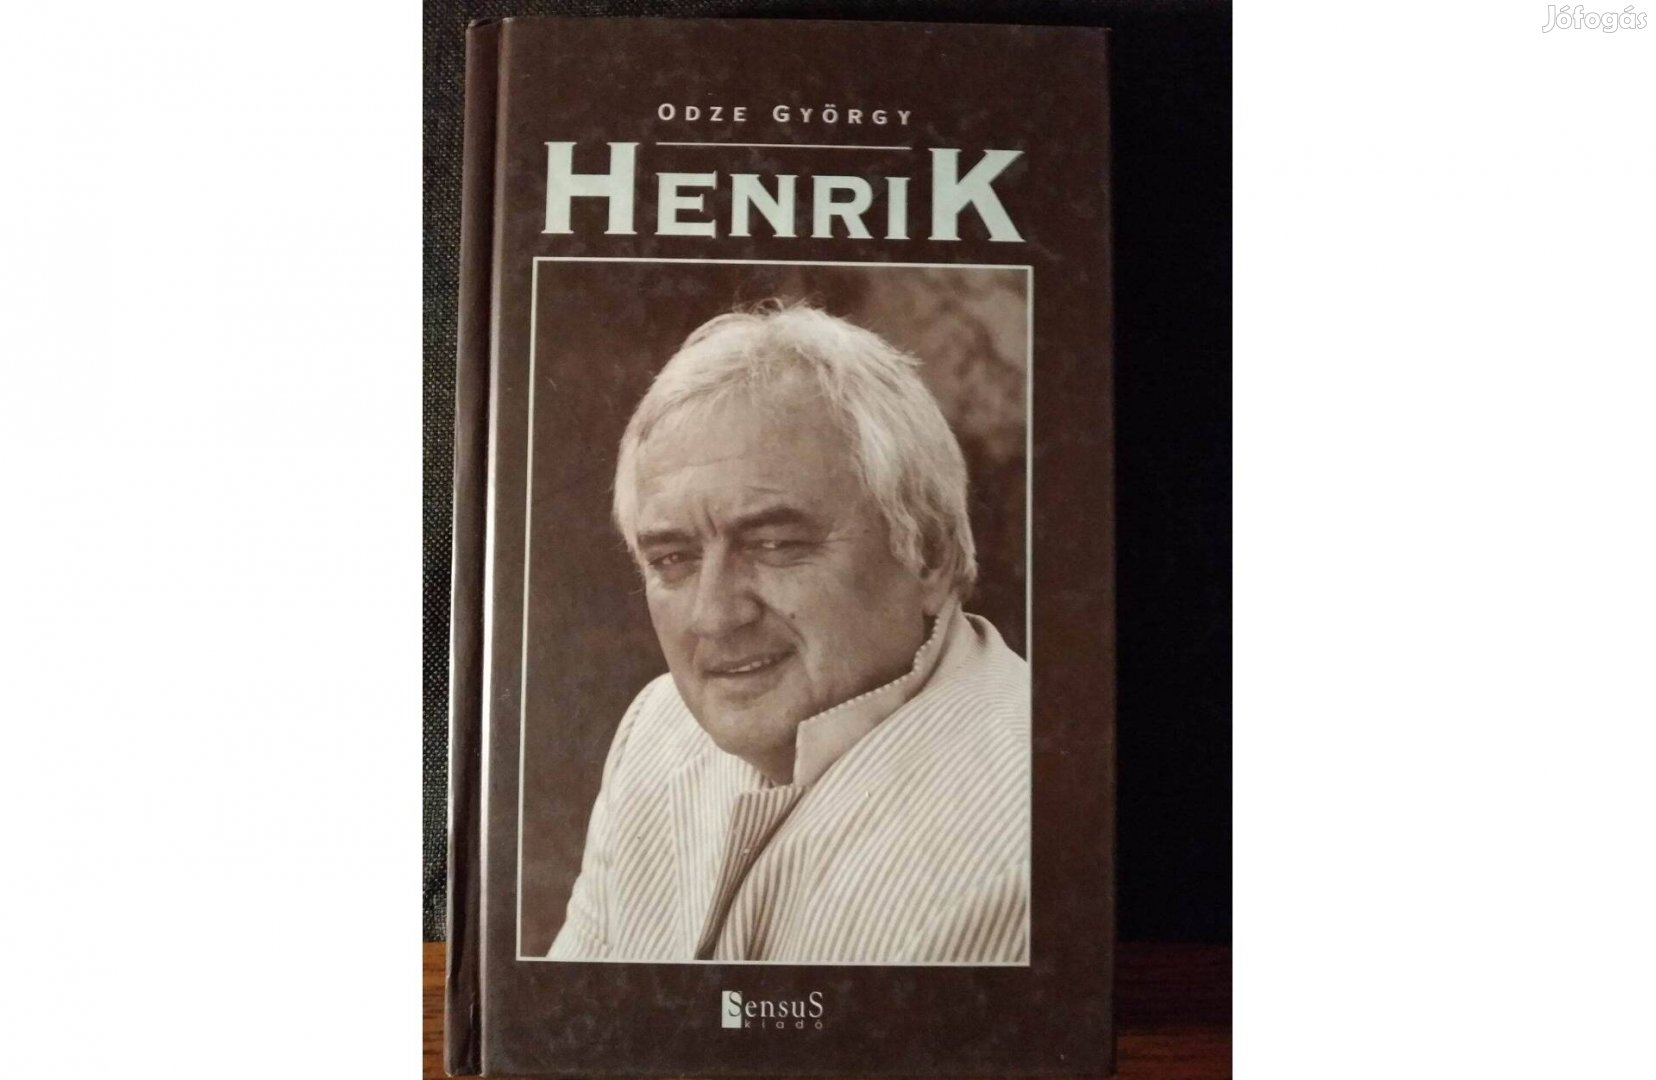 Henrik Odze György